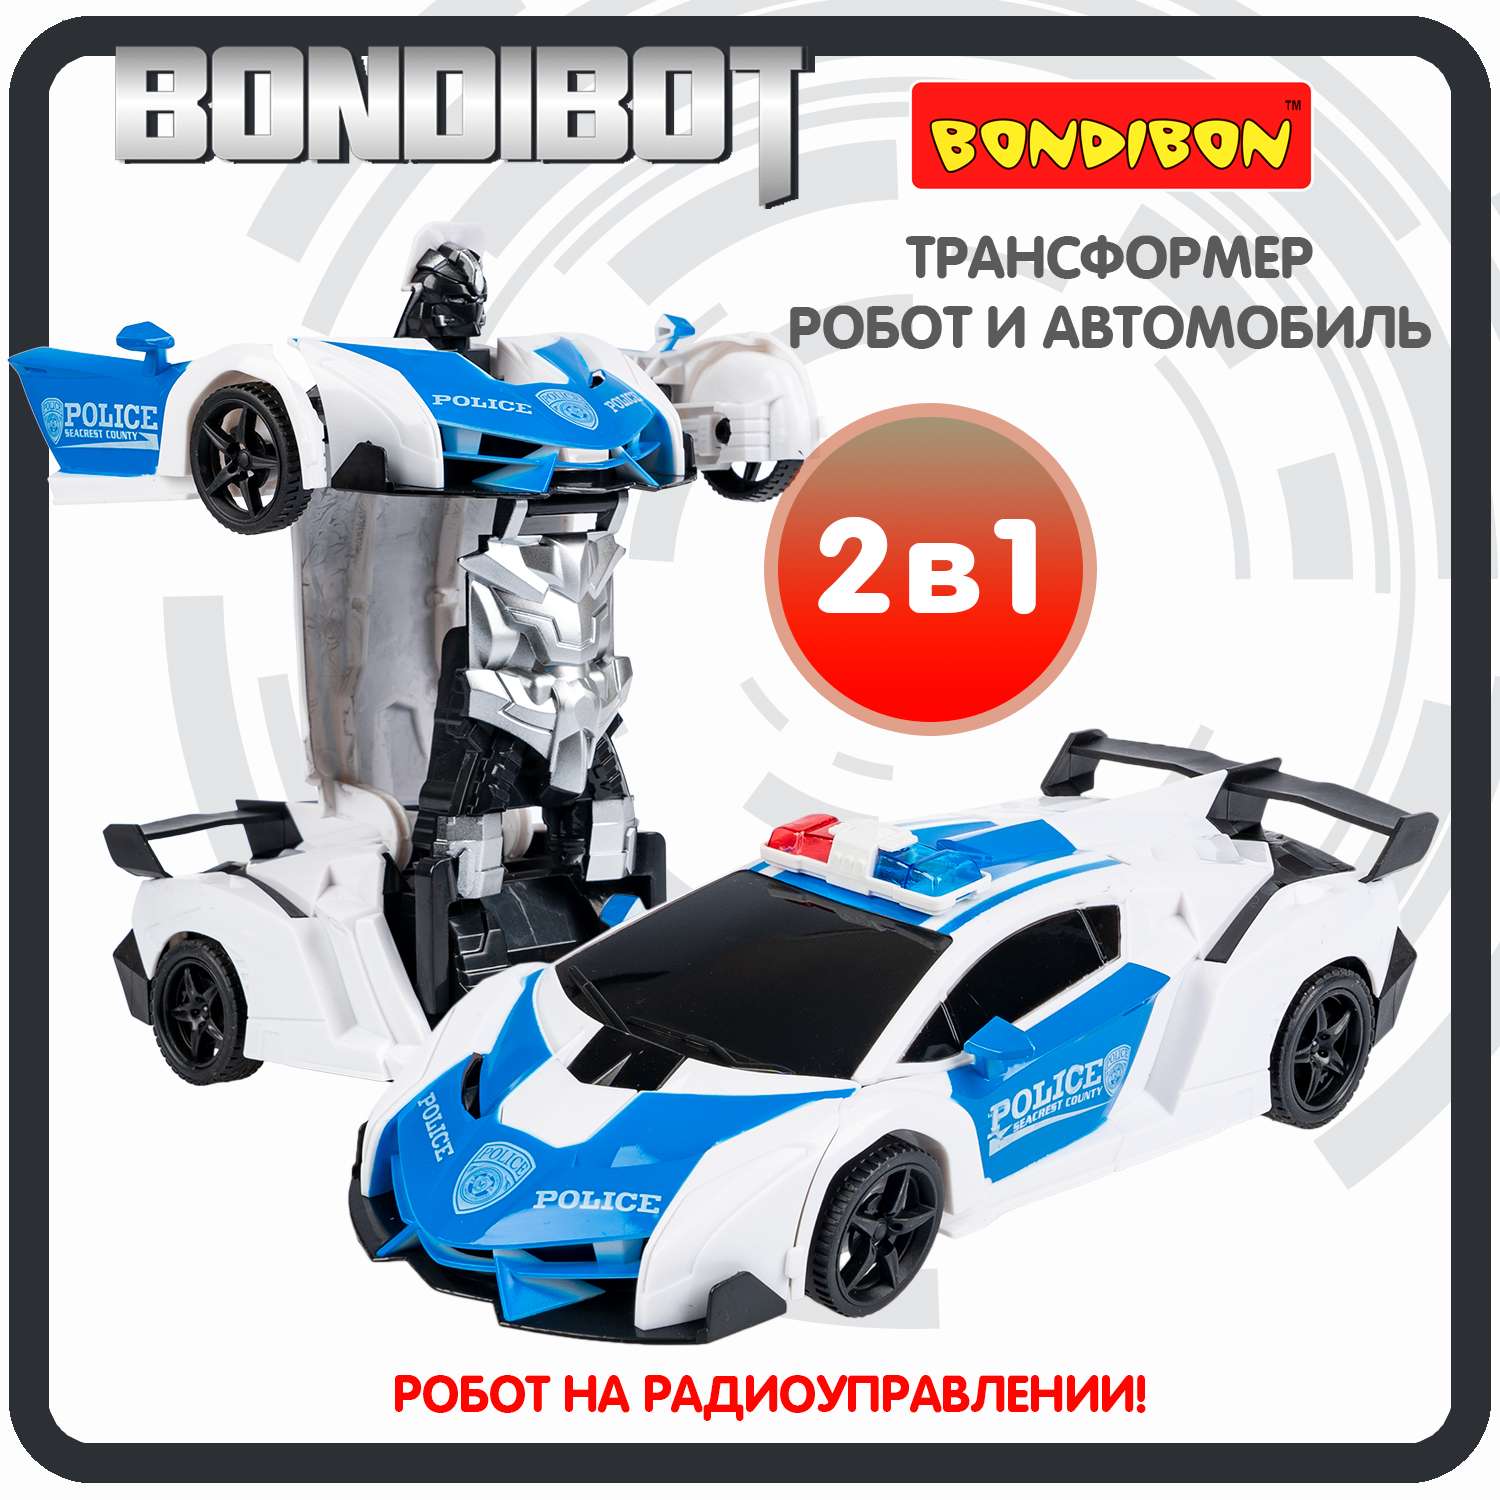 Трансформер BONDIBON BONDIBOT 2 в 1 робот-полицейский автомобиль со световыми эффектами бело-синего цвета - фото 1